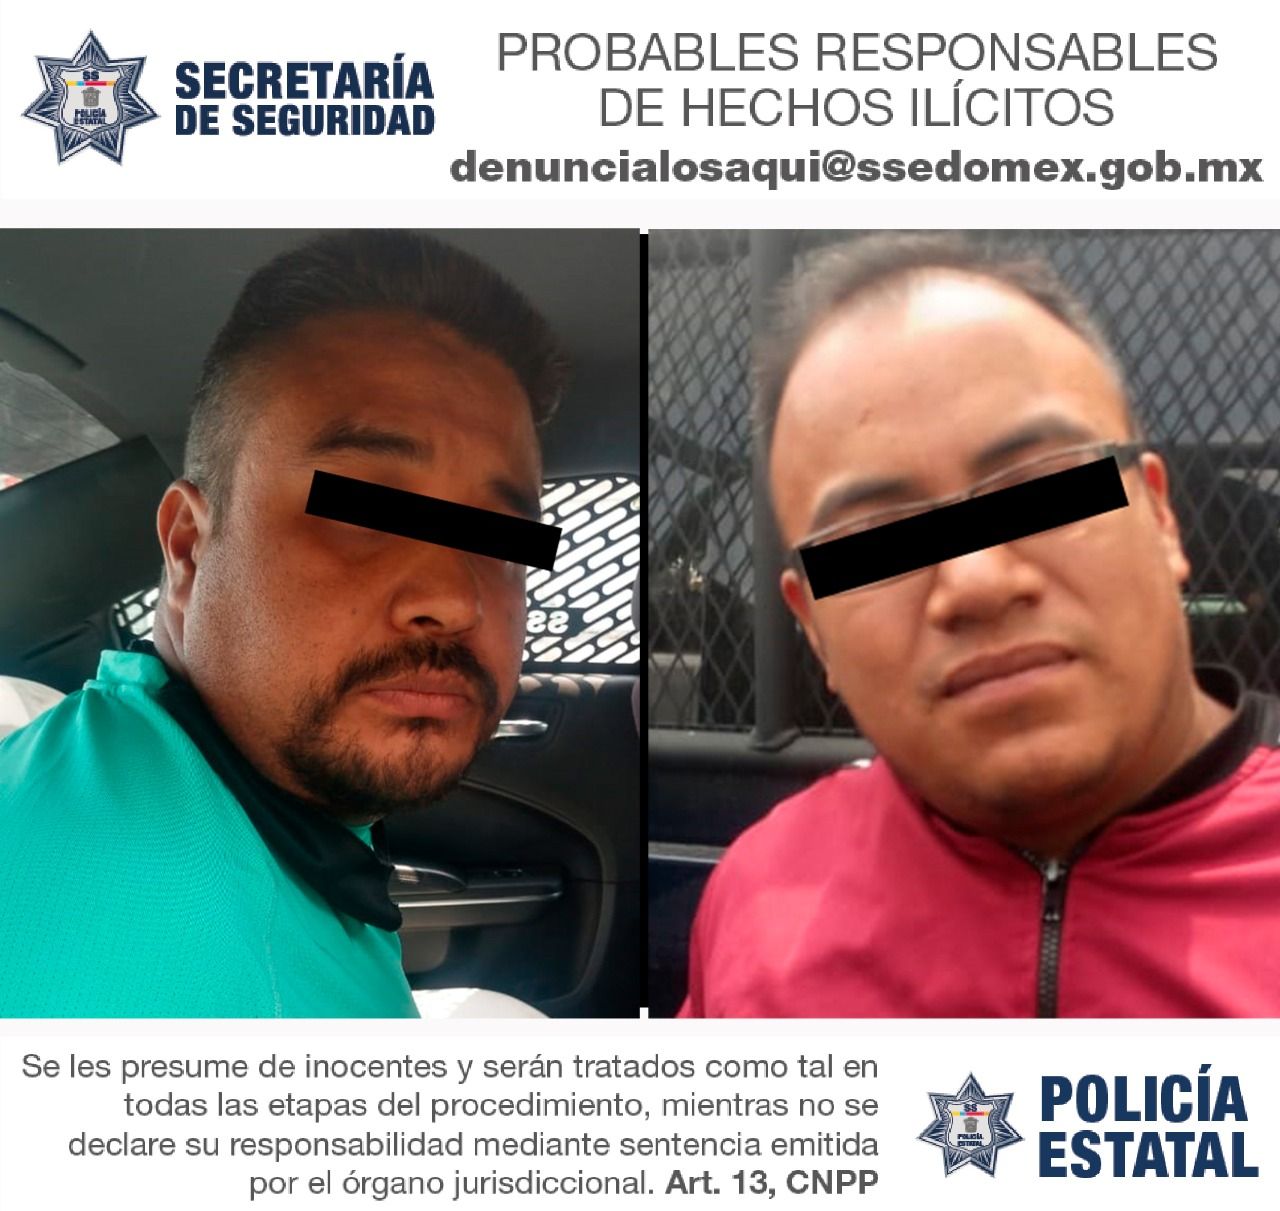 #Detienen  a dos sujetos con pistola y motocicleta en Ixtapaluca, si los conoces y te asaltaron denuncia